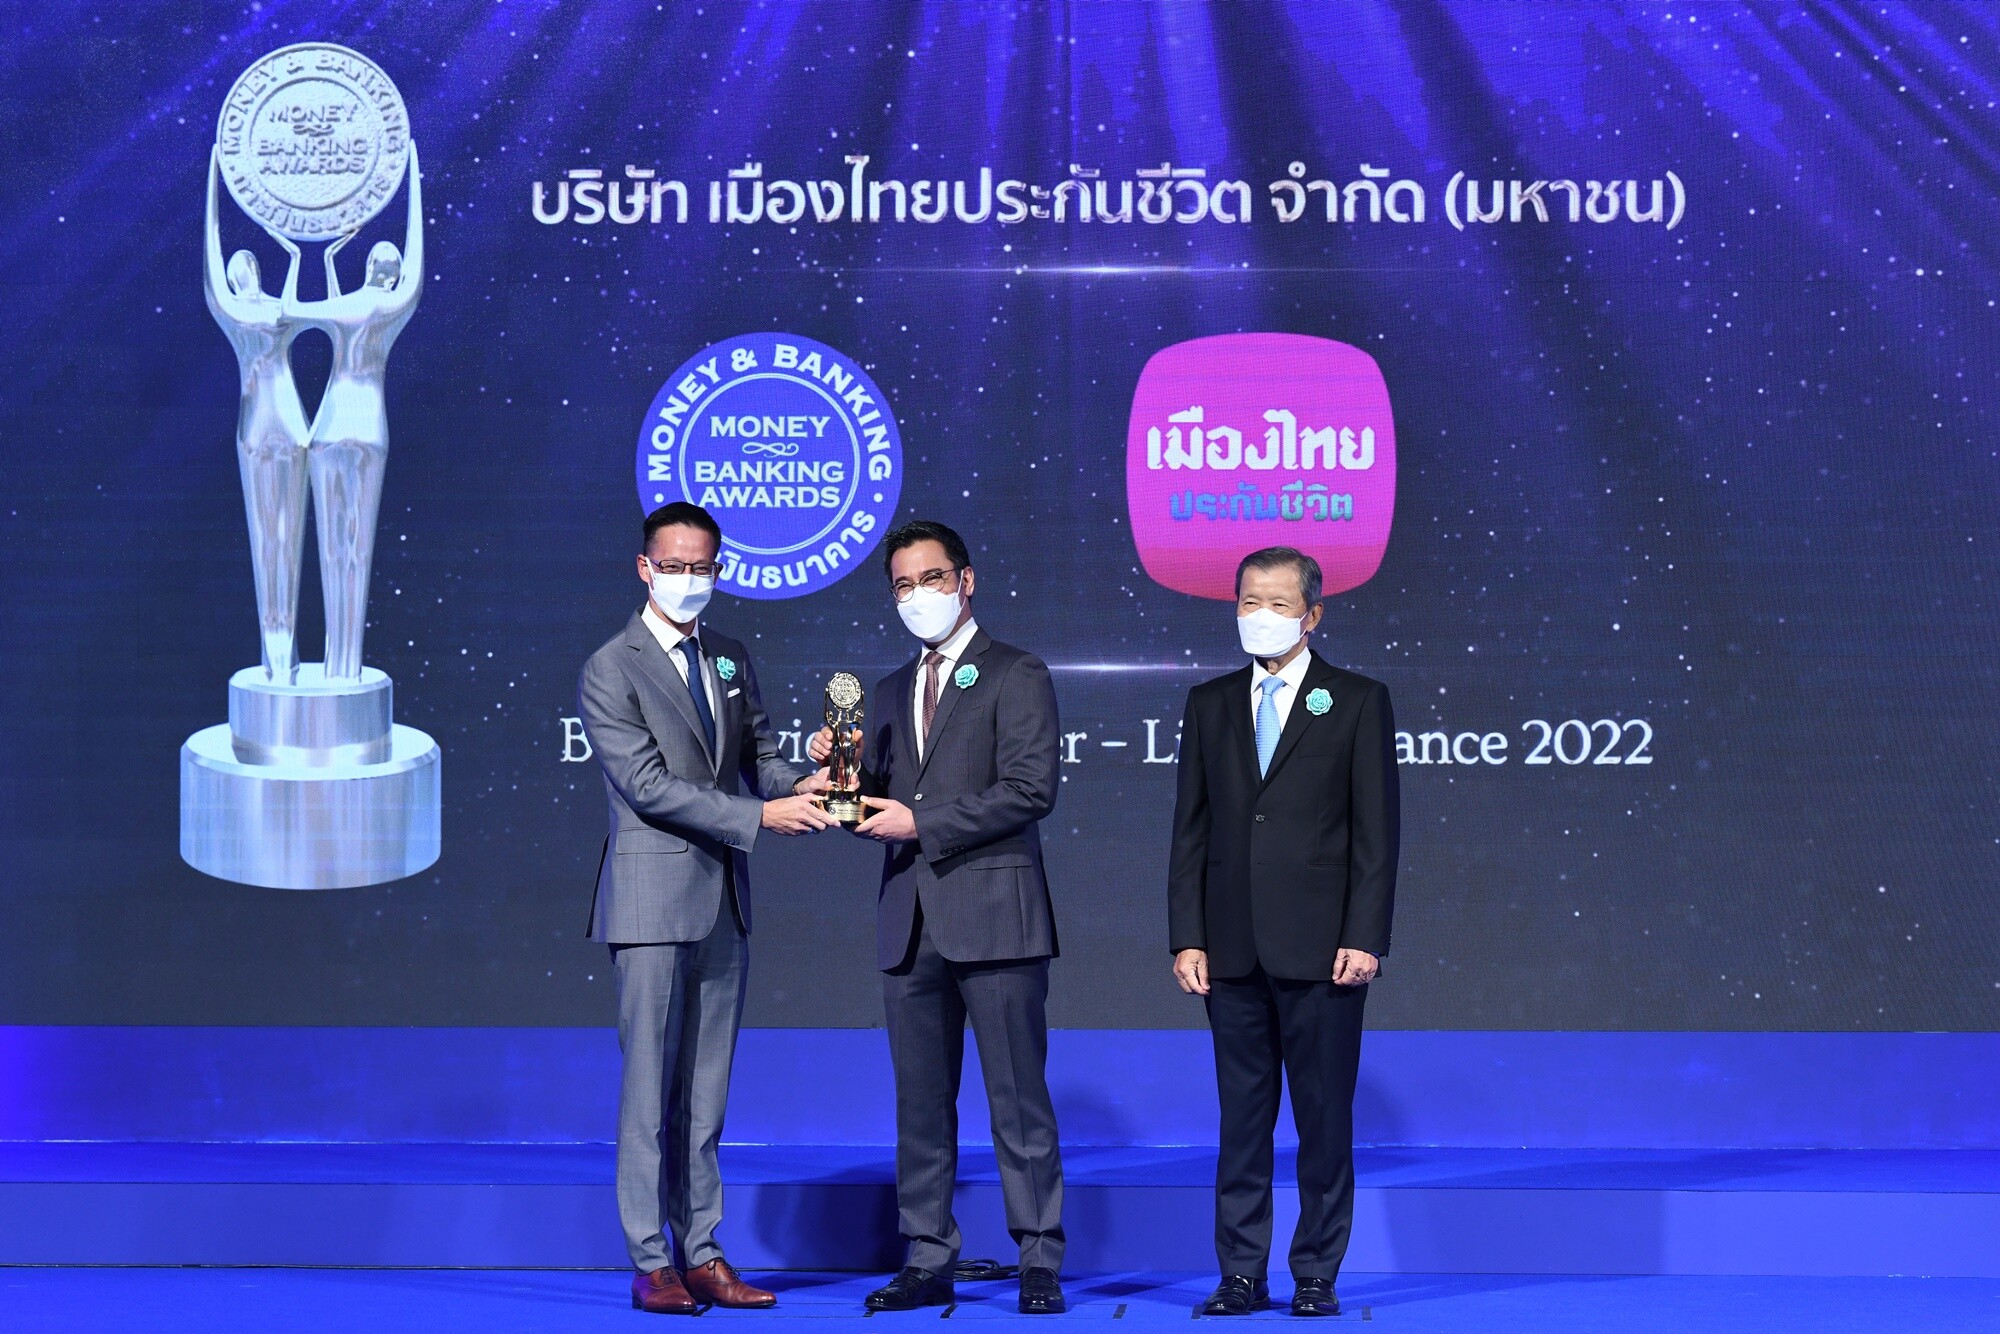 เมืองไทยประกันชีวิต คว้า 2 รางวัลเกียรติยศ  "บริษัทที่มีบริการยอดเยี่ยม ด้านประกันชีวิต 2565" 4 ปีต่อเนื่อง  และ "รางวัลบูธสวยงามยอดเยี่ยม" งาน Money & Banking Awards 2022